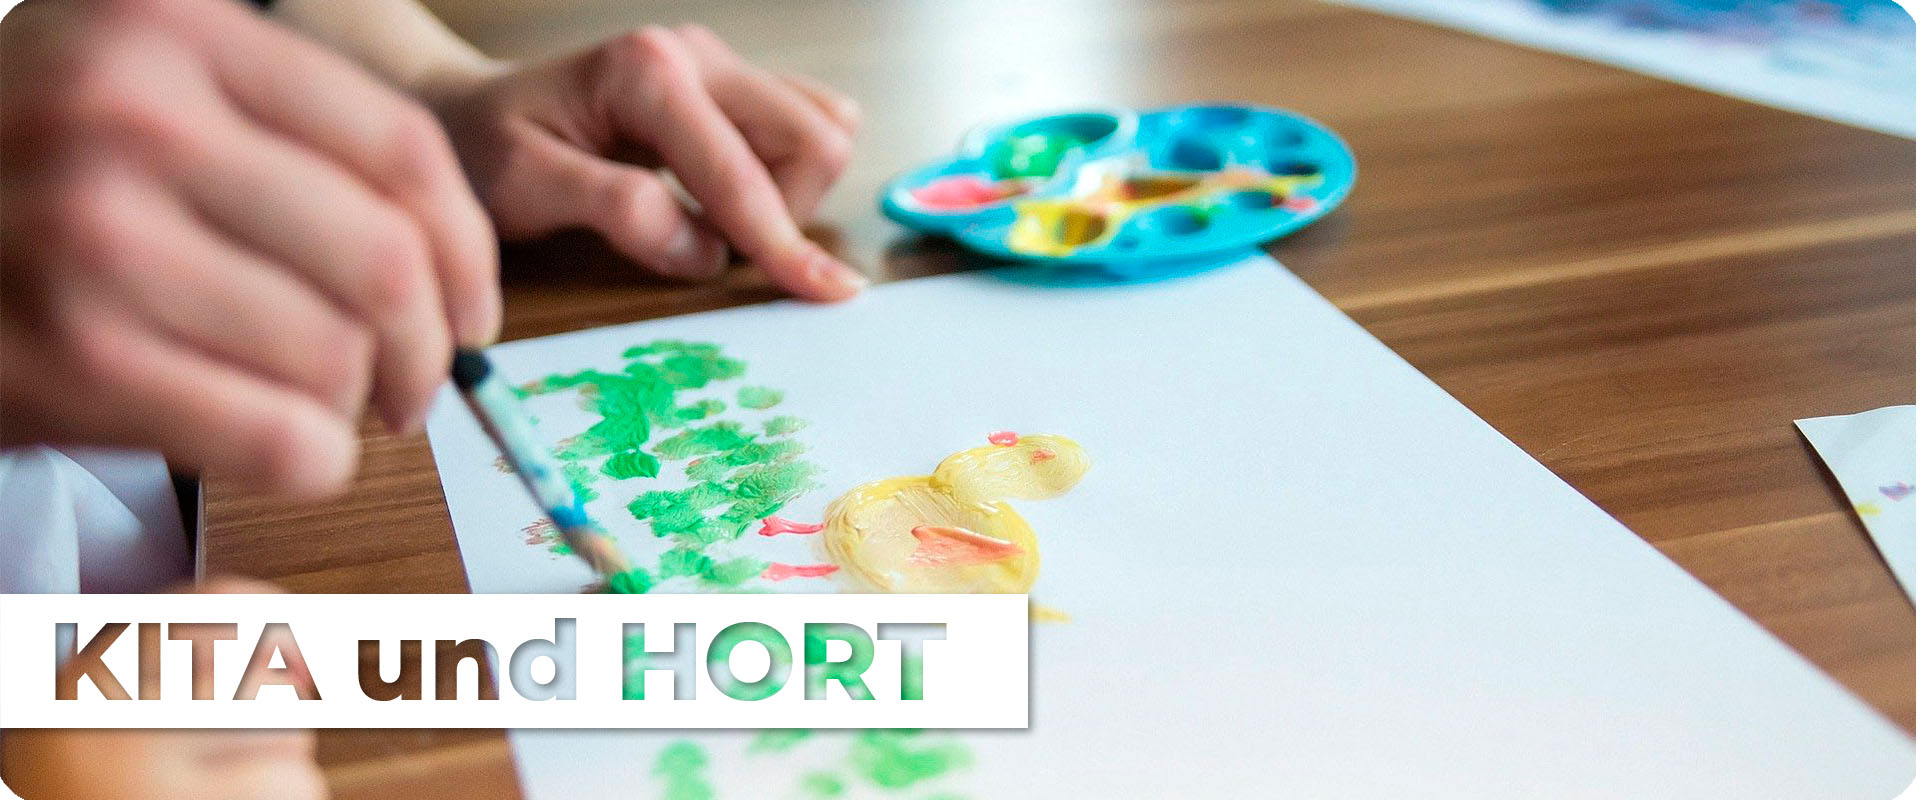 Ein Kleinkind malt mit Hilfe eines Erwacshenen ein Bild mit Pinsel und Deckfarben